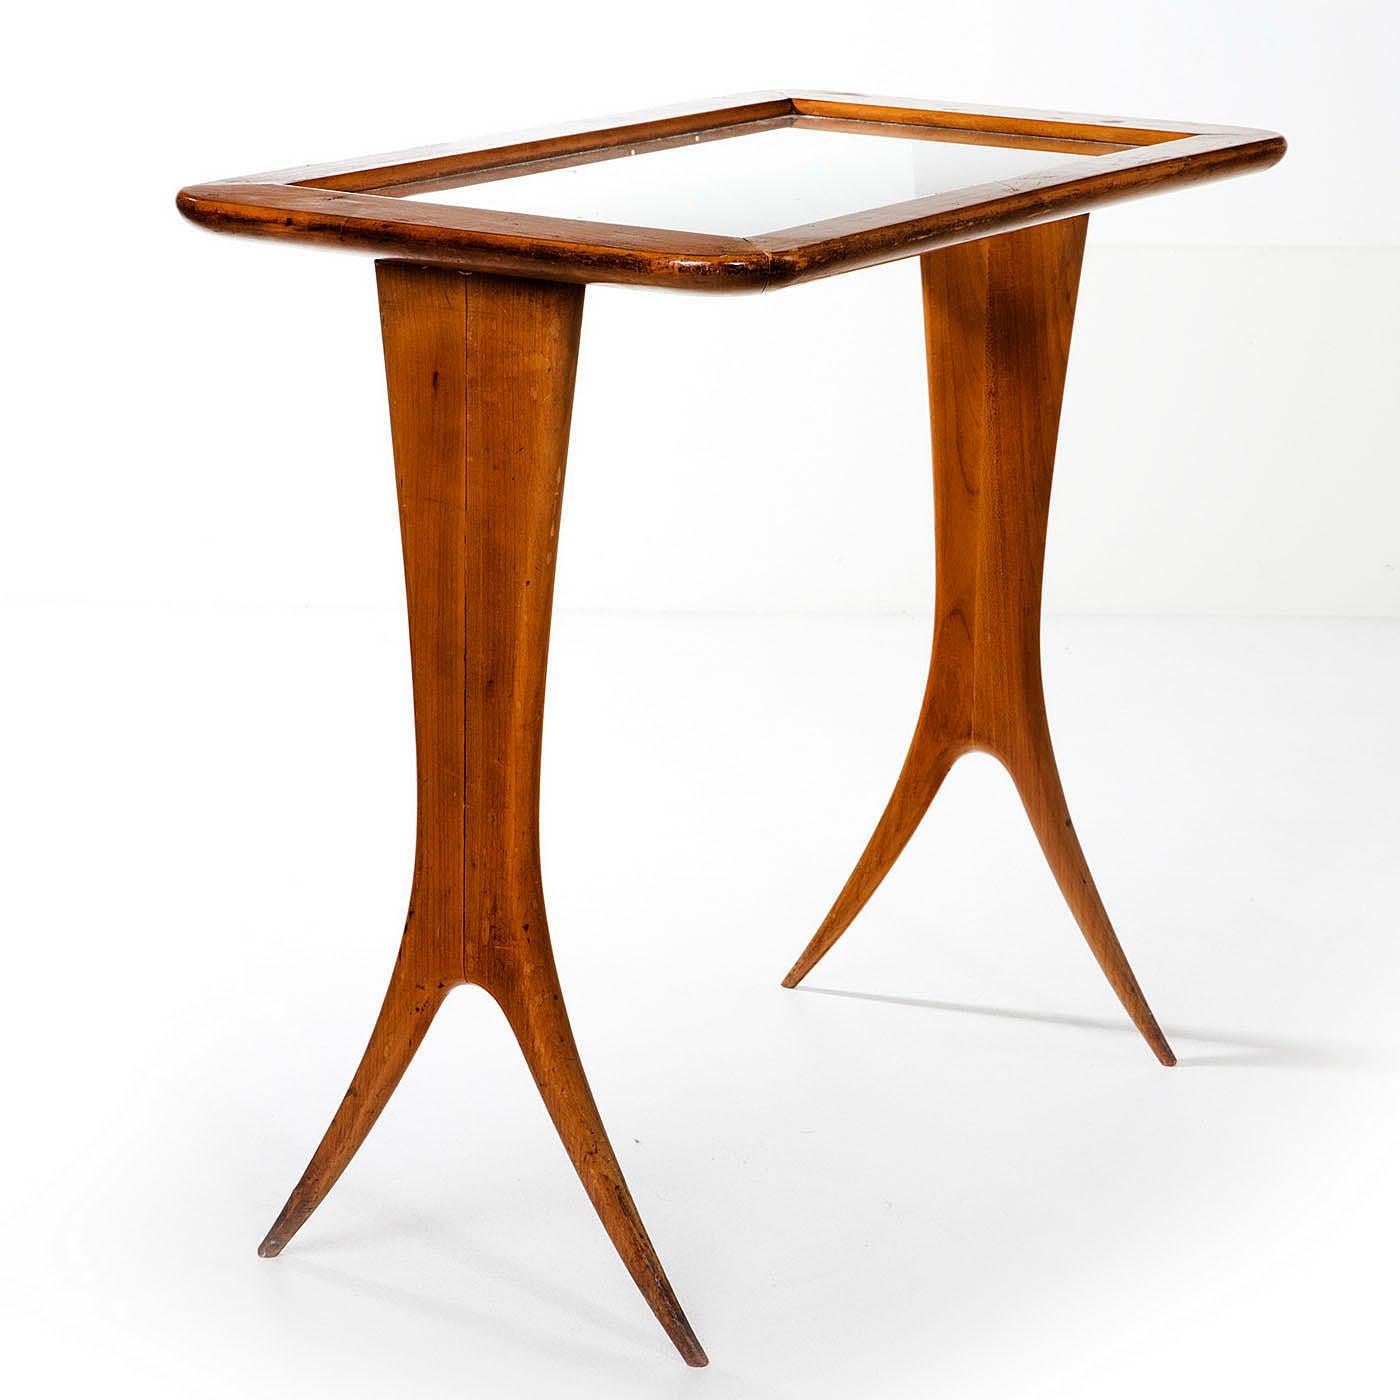 Satz hochwertiger Nussbaum-Nestetische mit Glasplatten von Raphael (1912 - 2000). Diese eleganten Tische sind sehr skulptural und auch sehr praktisch, da sie mit Glasplatten ausgestattet sind und somit auch für heiße Getränke verwendet werden